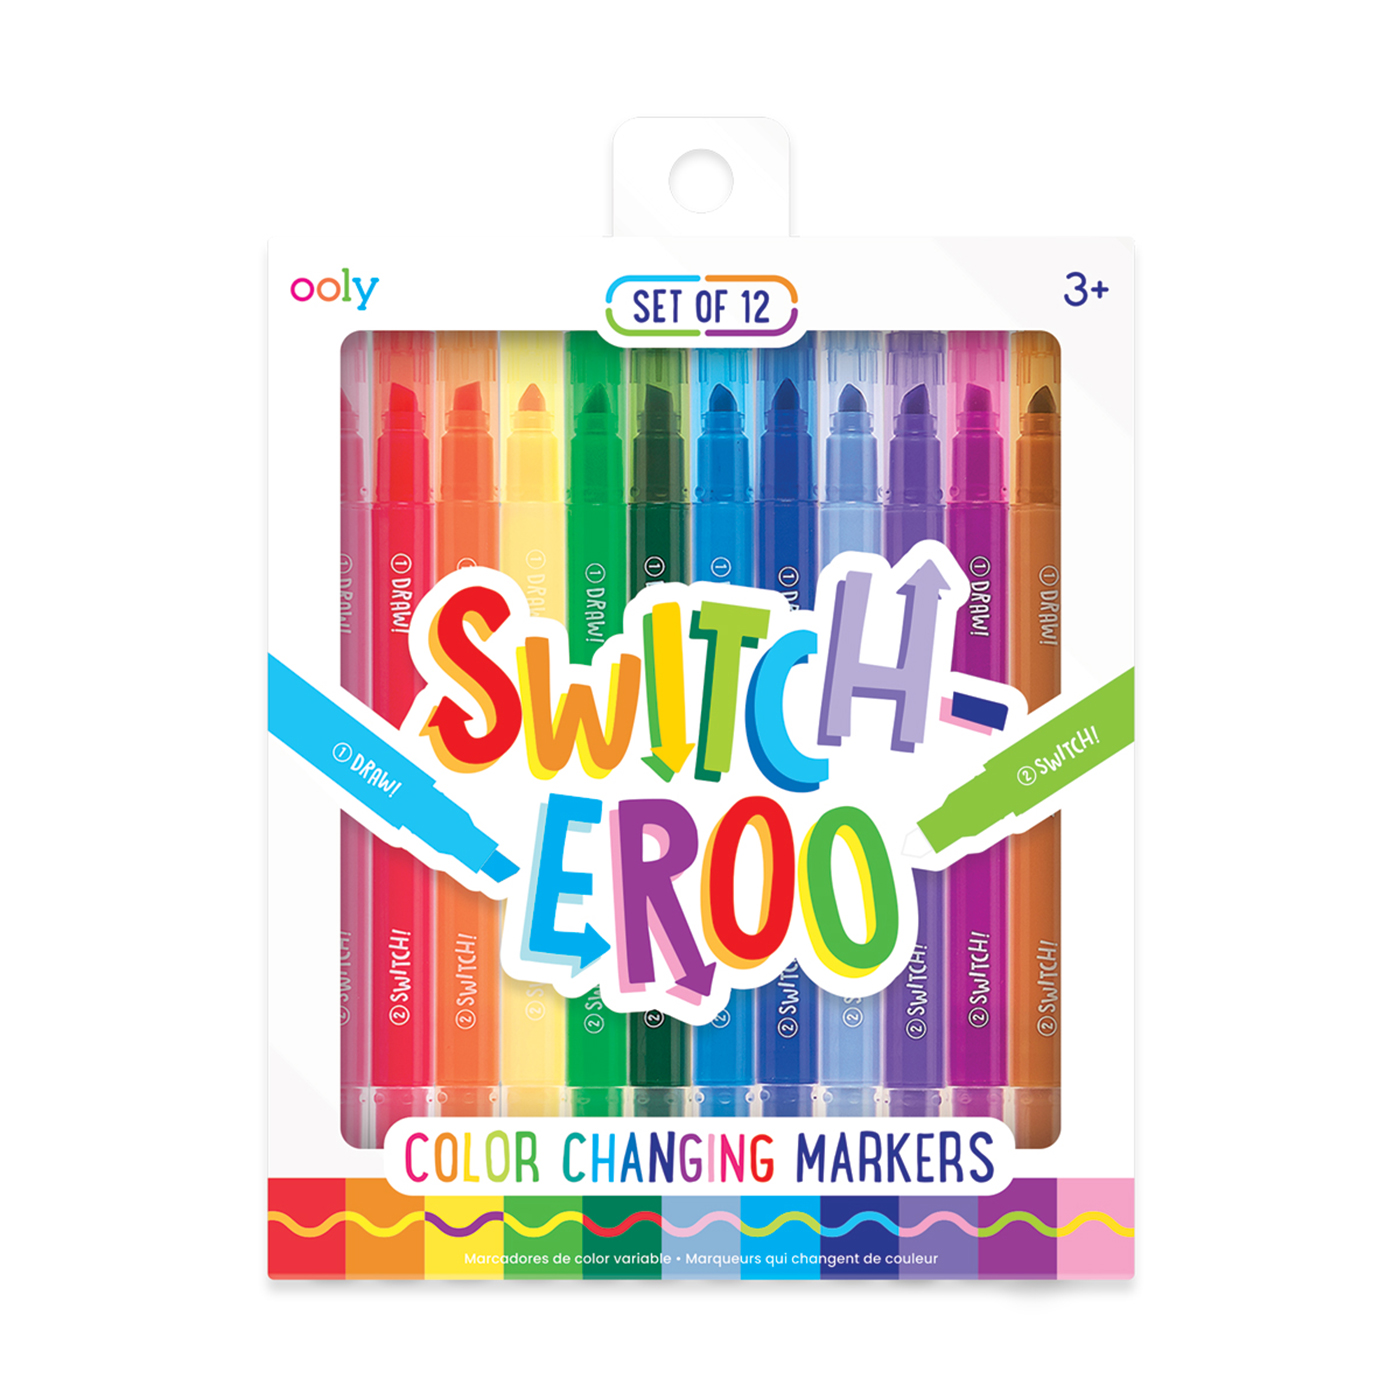  Ooly Switch-eroo Renk Değiştiren 12’li Keçeli Kalem